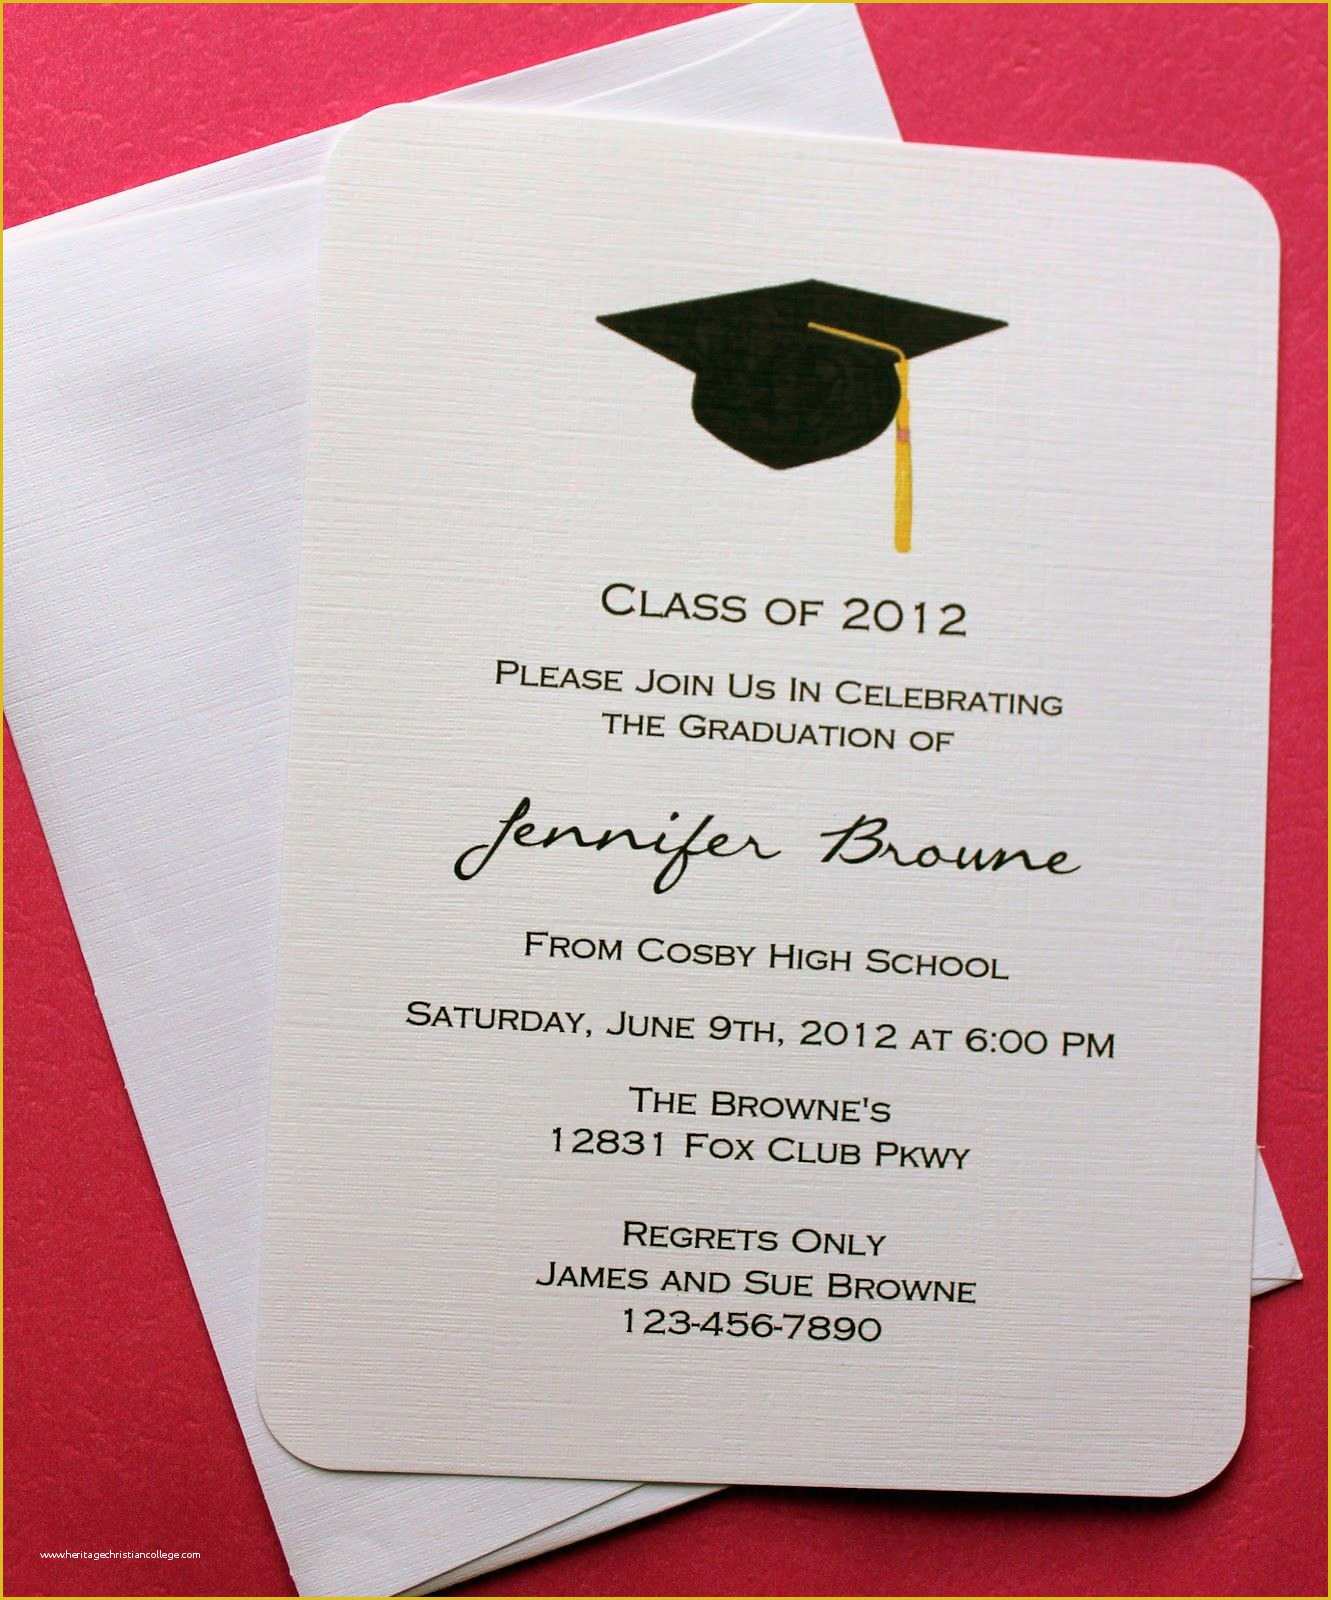 College Graduation Party Invitations Templates Free Of Graduation Invitation Template Graduation Invitation